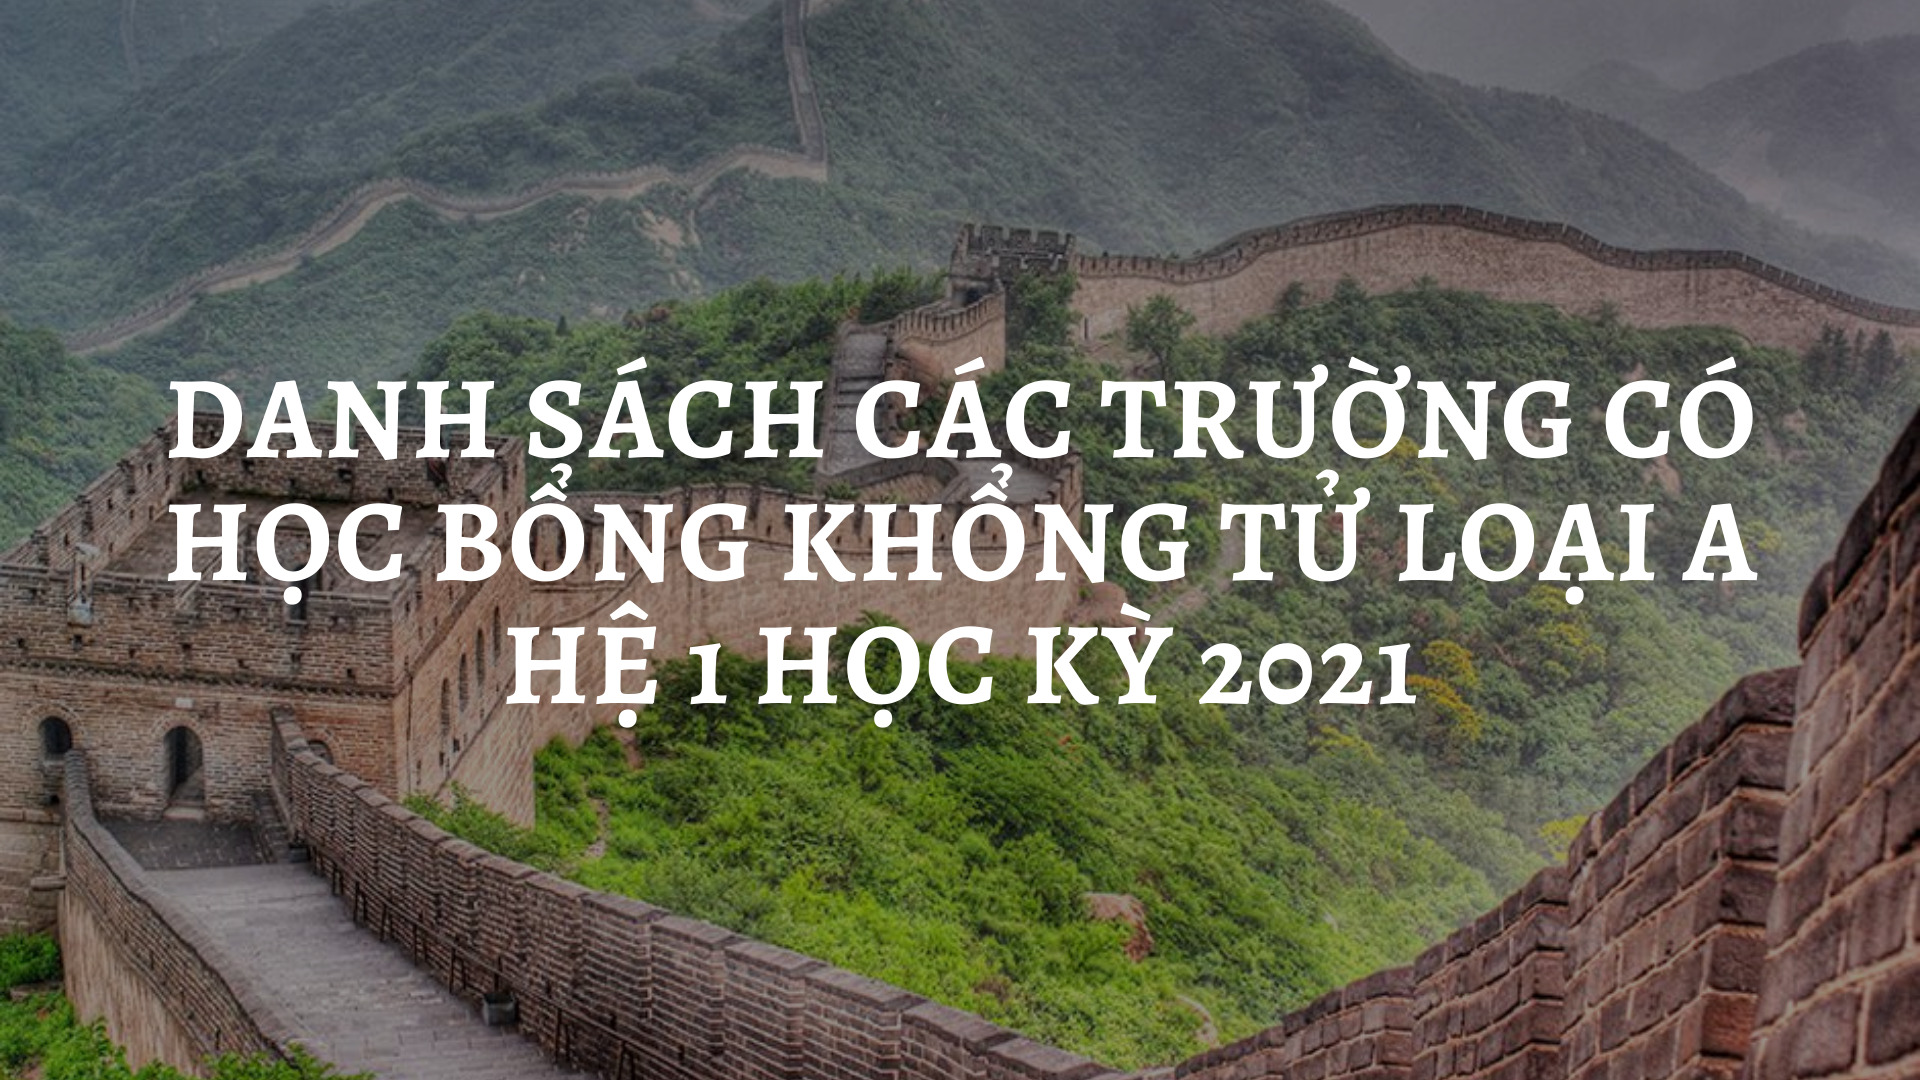 Danh Sach Cac Truong Co Hoc Bong Khong Tu Loai A He 1 Hoc Ky Nam 2021 2023